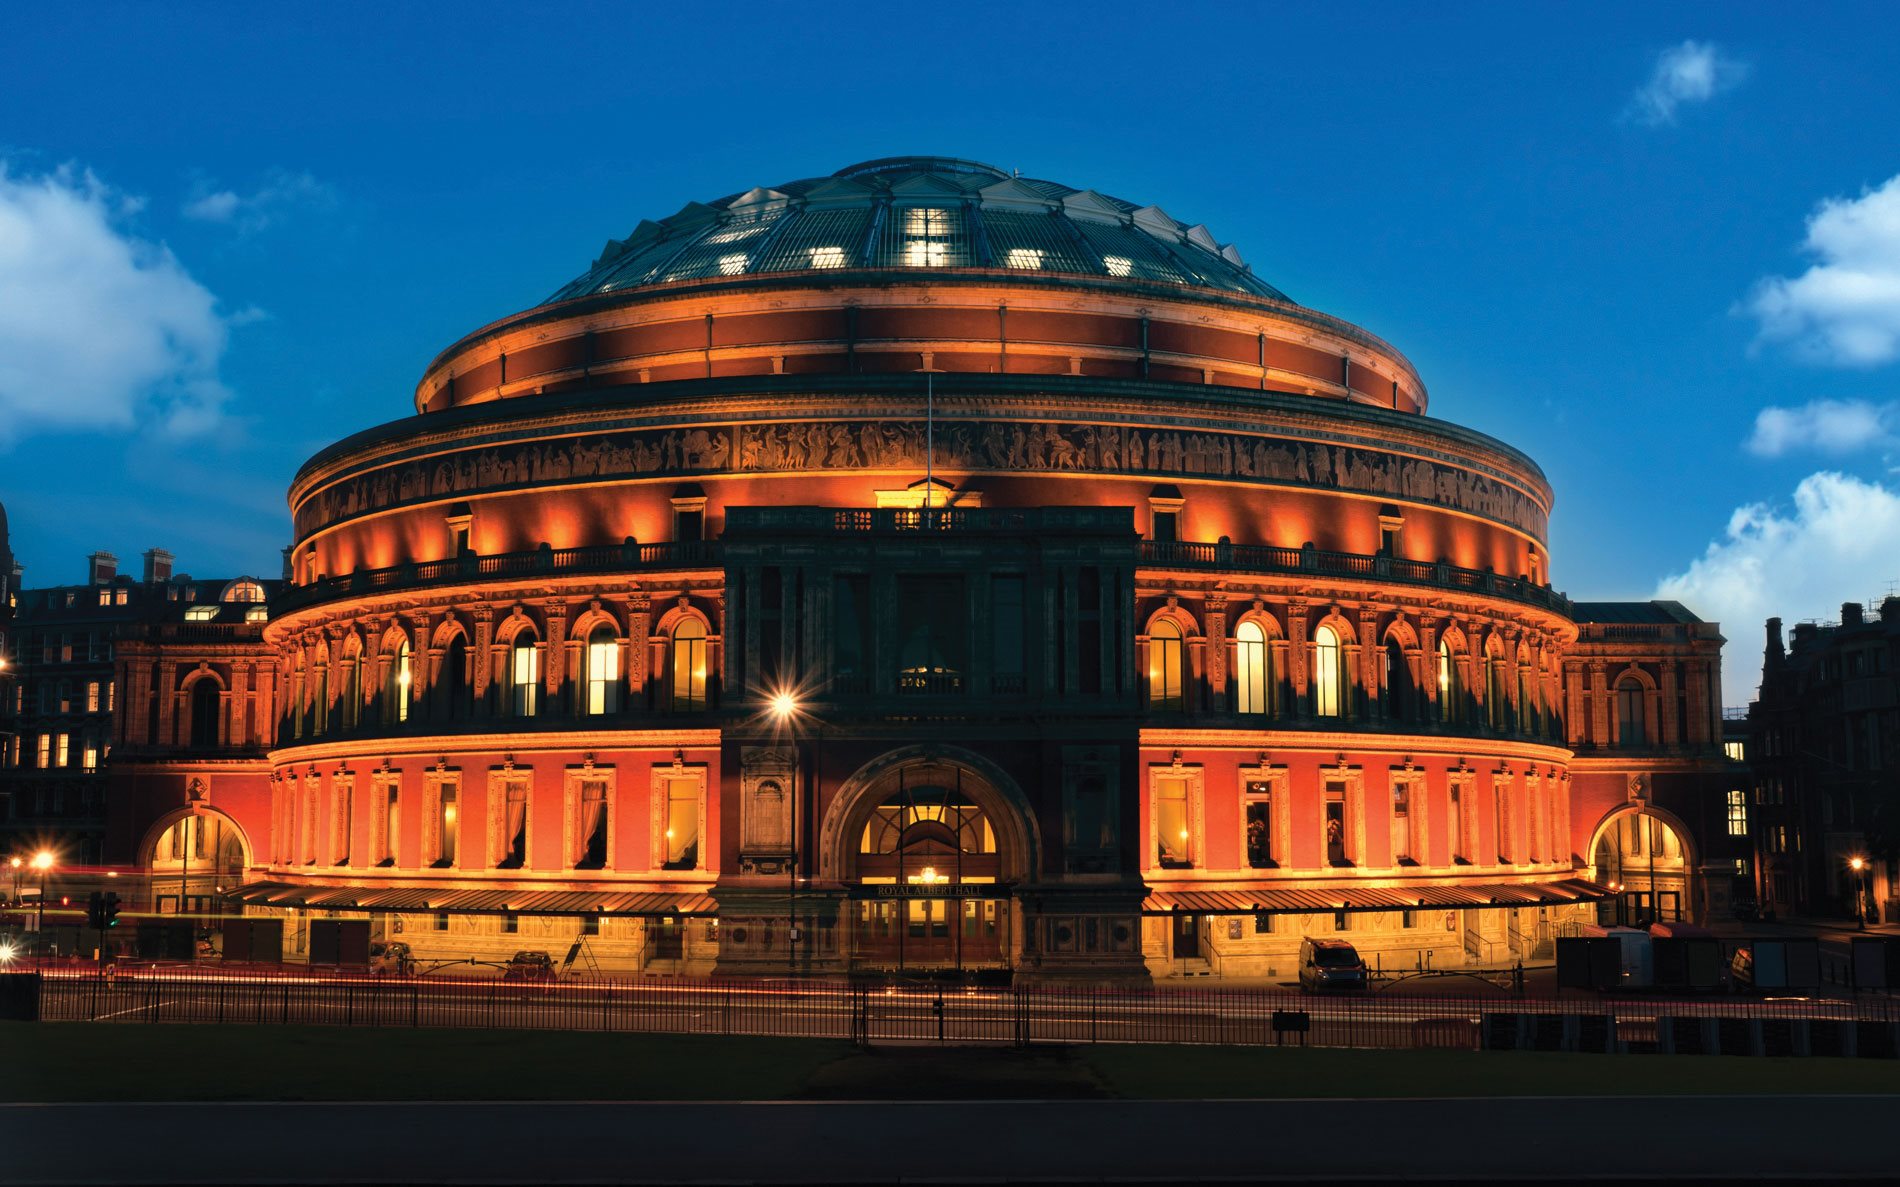 The Royal Albert Hall at night